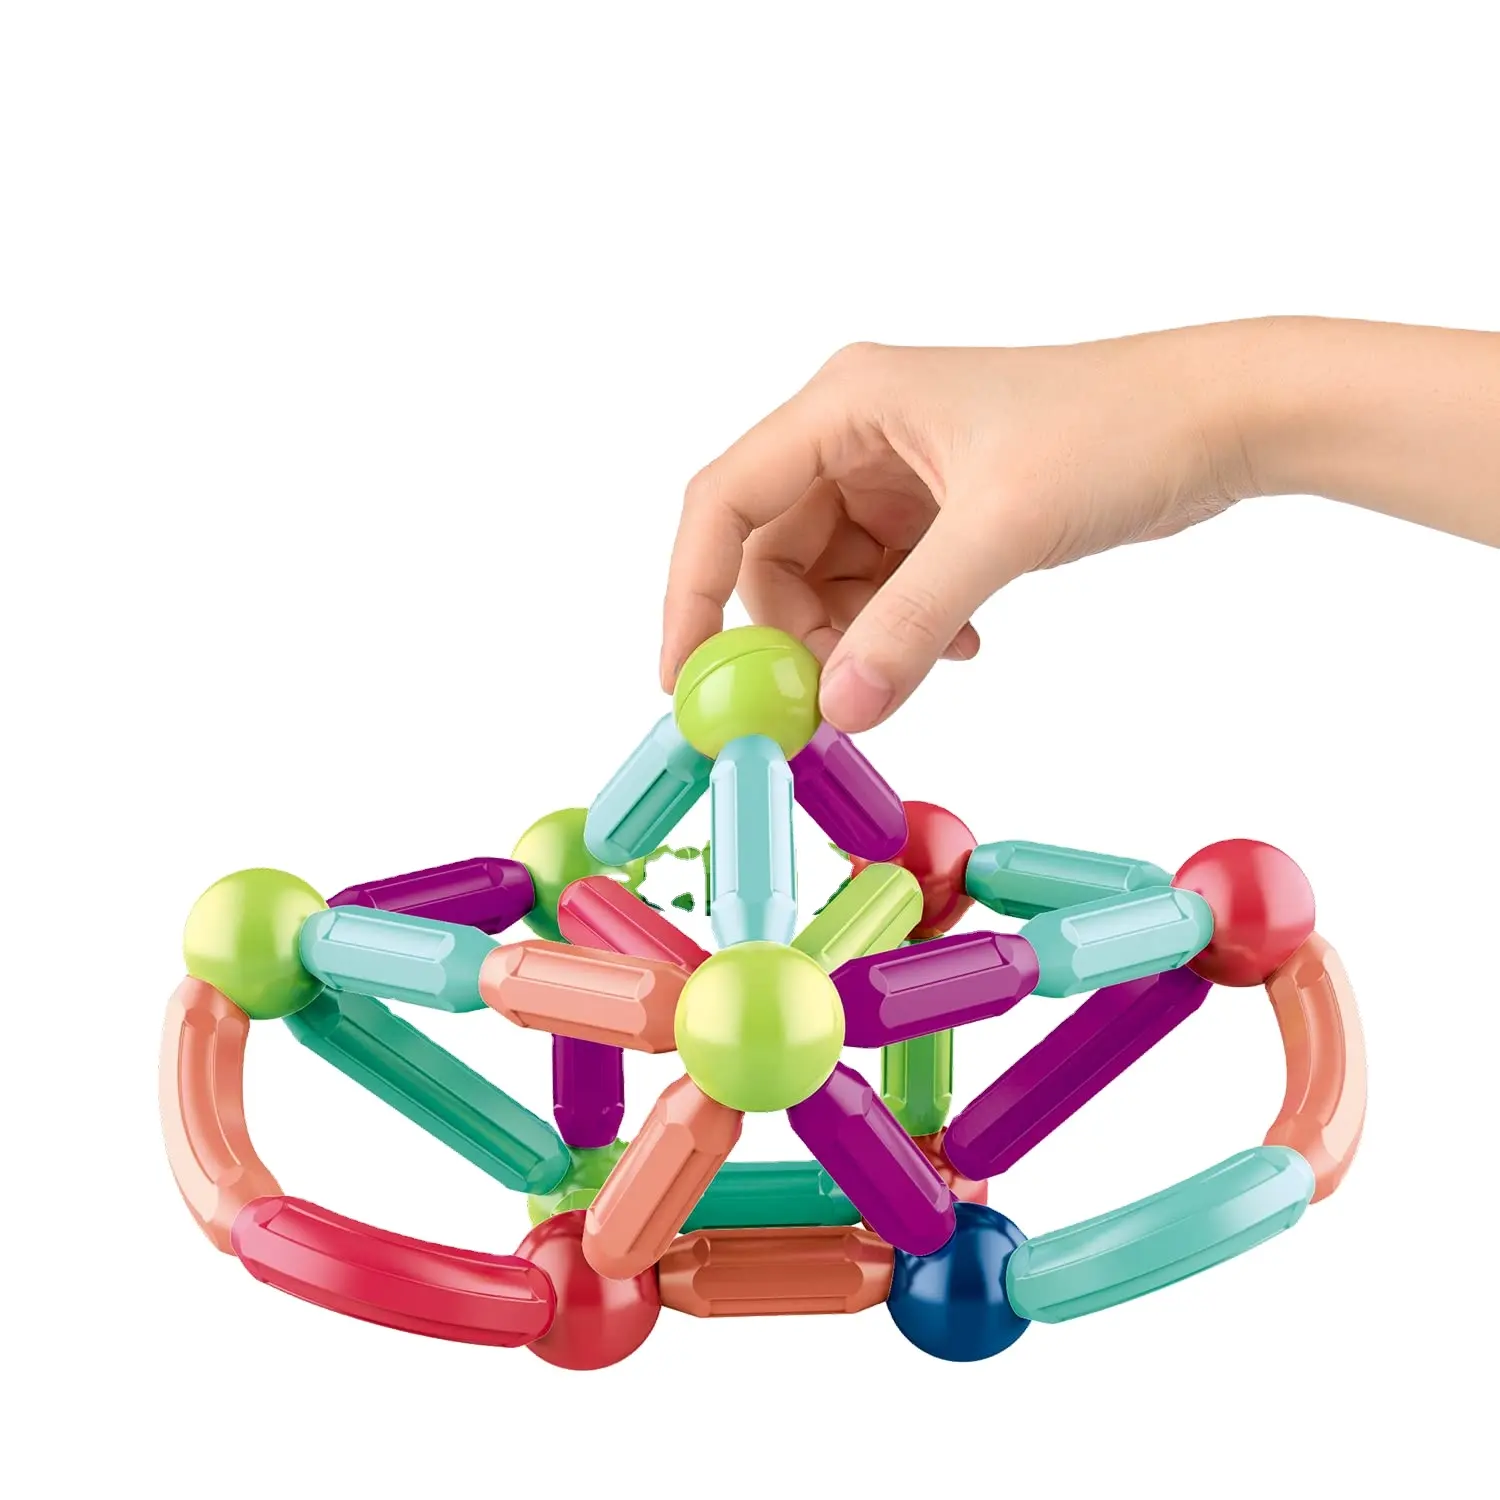 كتل مغناطيسية شريط 3d المغناطيس عصا مجموعة لعبة لعبة تعليمية المغناطيسي بناء العصي لعب للأطفال